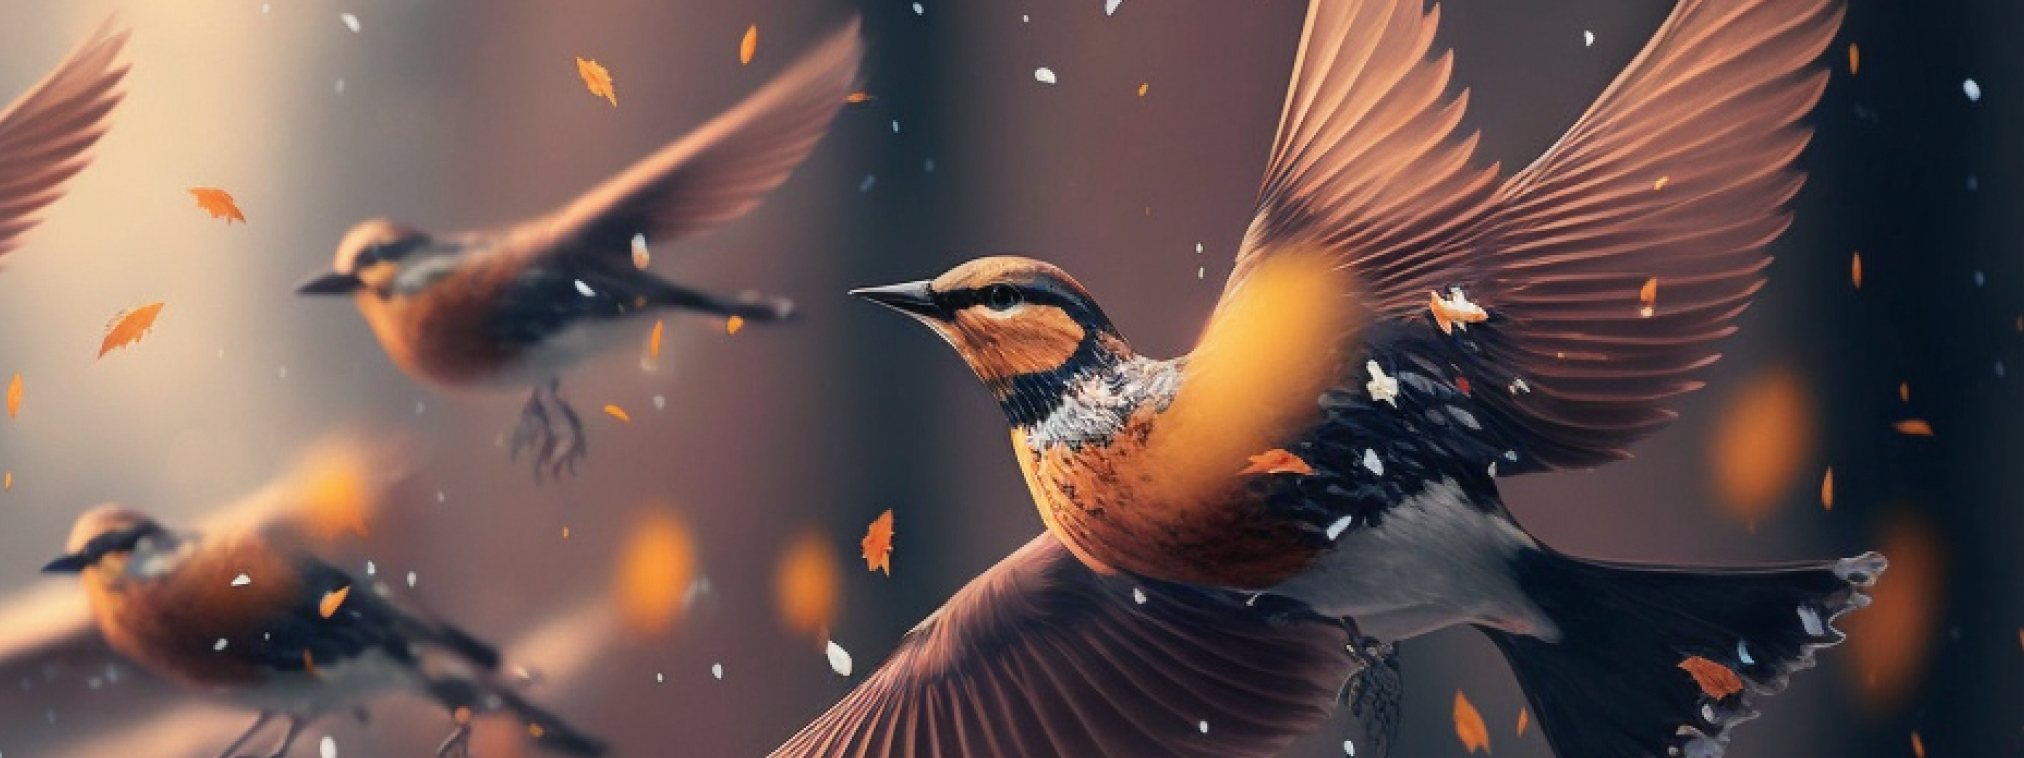 Imagen de pájaros volando, generada con inteligencia artificial. Para portada de blog sobre la importancia de hacer balance en los proyectos antes de ir a por nuevos objetivos.